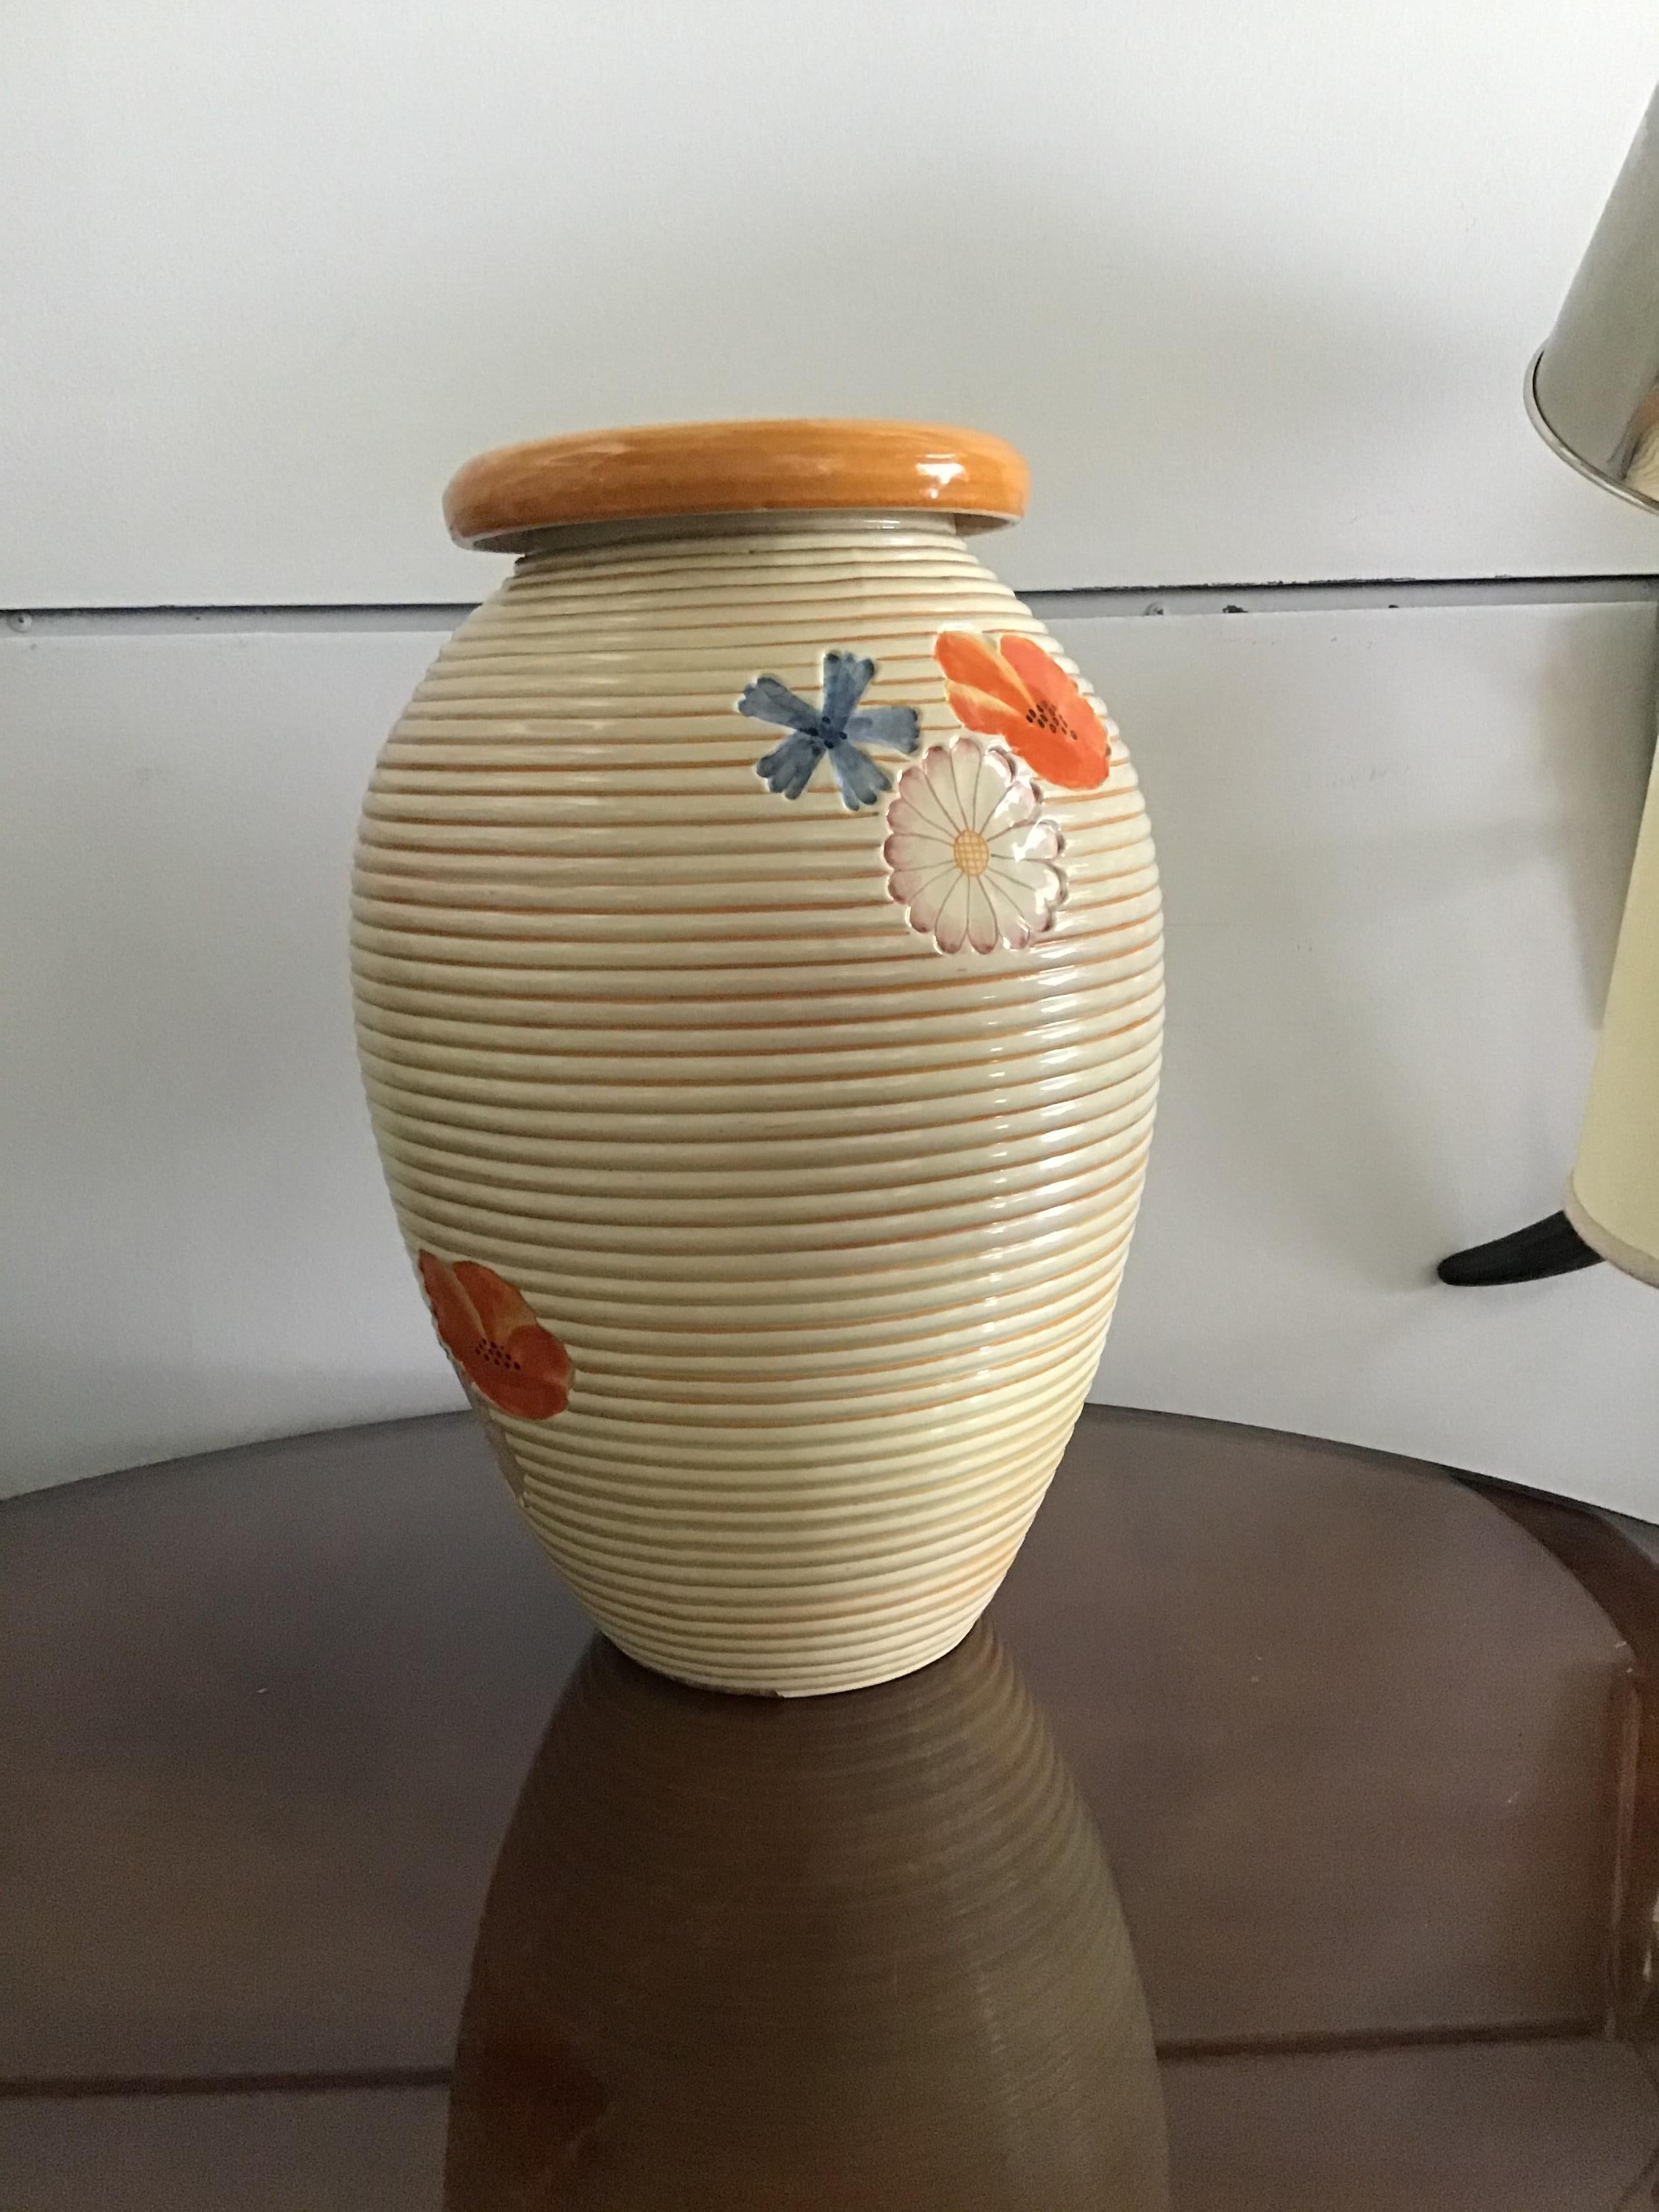 Pucci Umbertide Vase /Umbrella Stand Ceramic, 1950, Italy For Sale 1